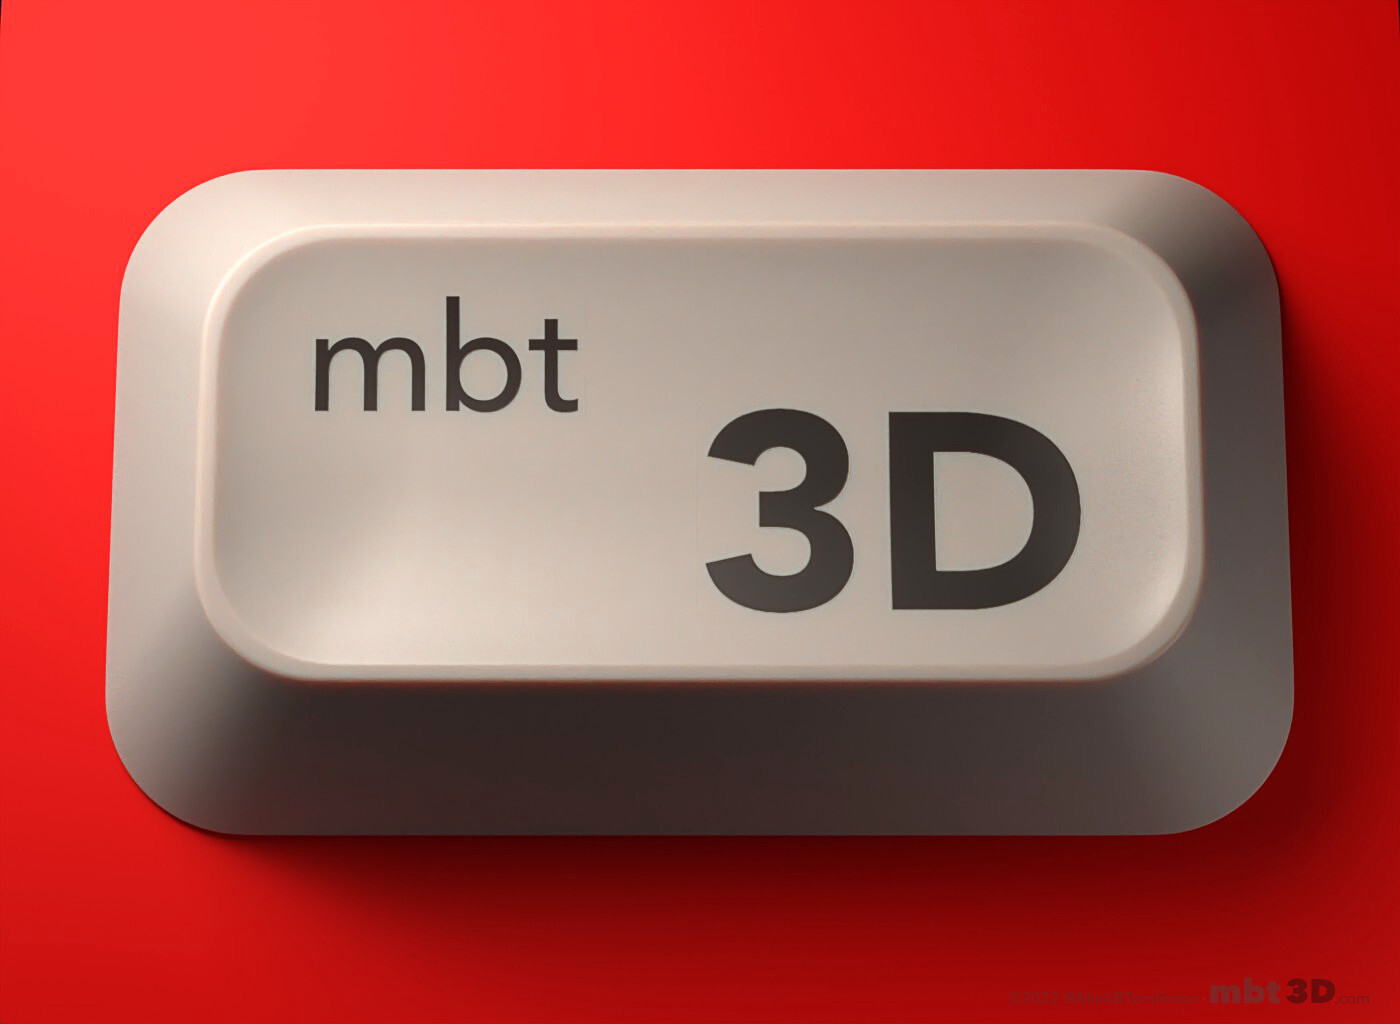 mbt 3D: